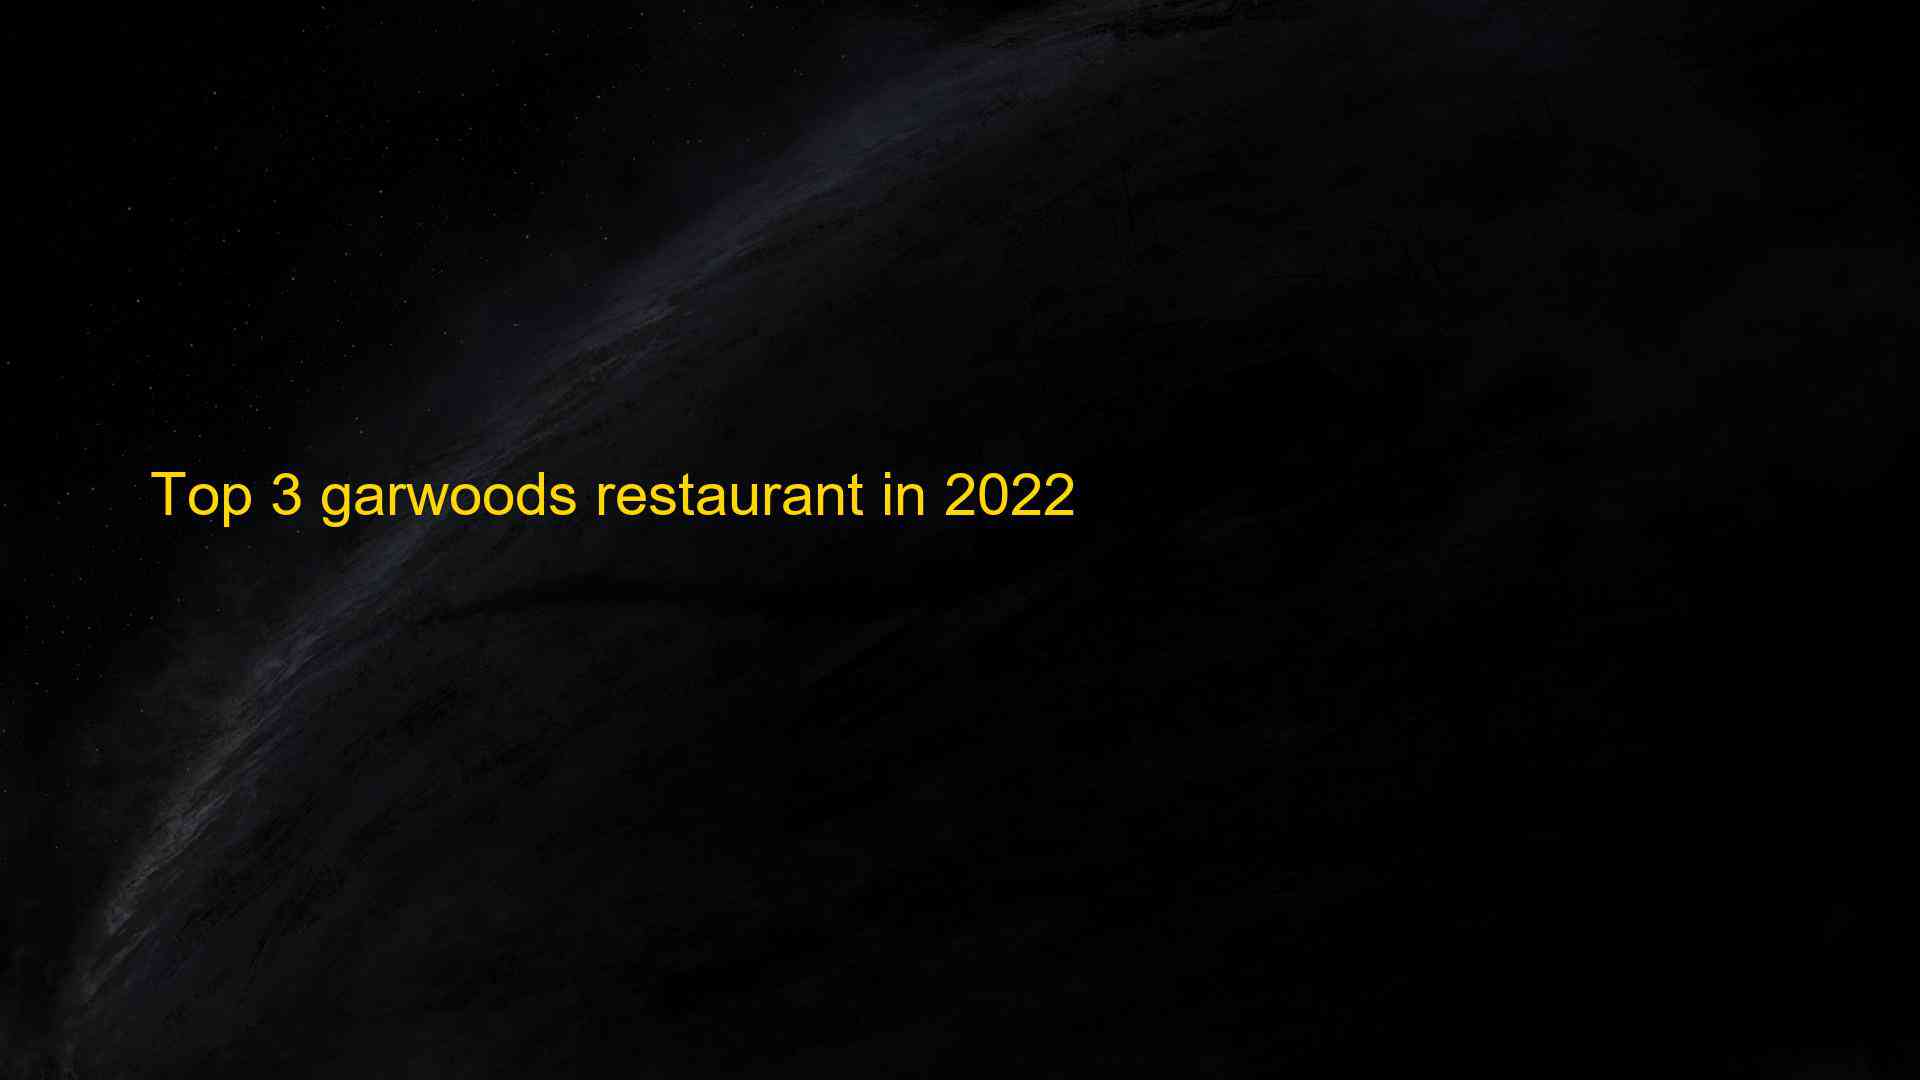 Top 3 garwoods restaurant in 2022 1663400875